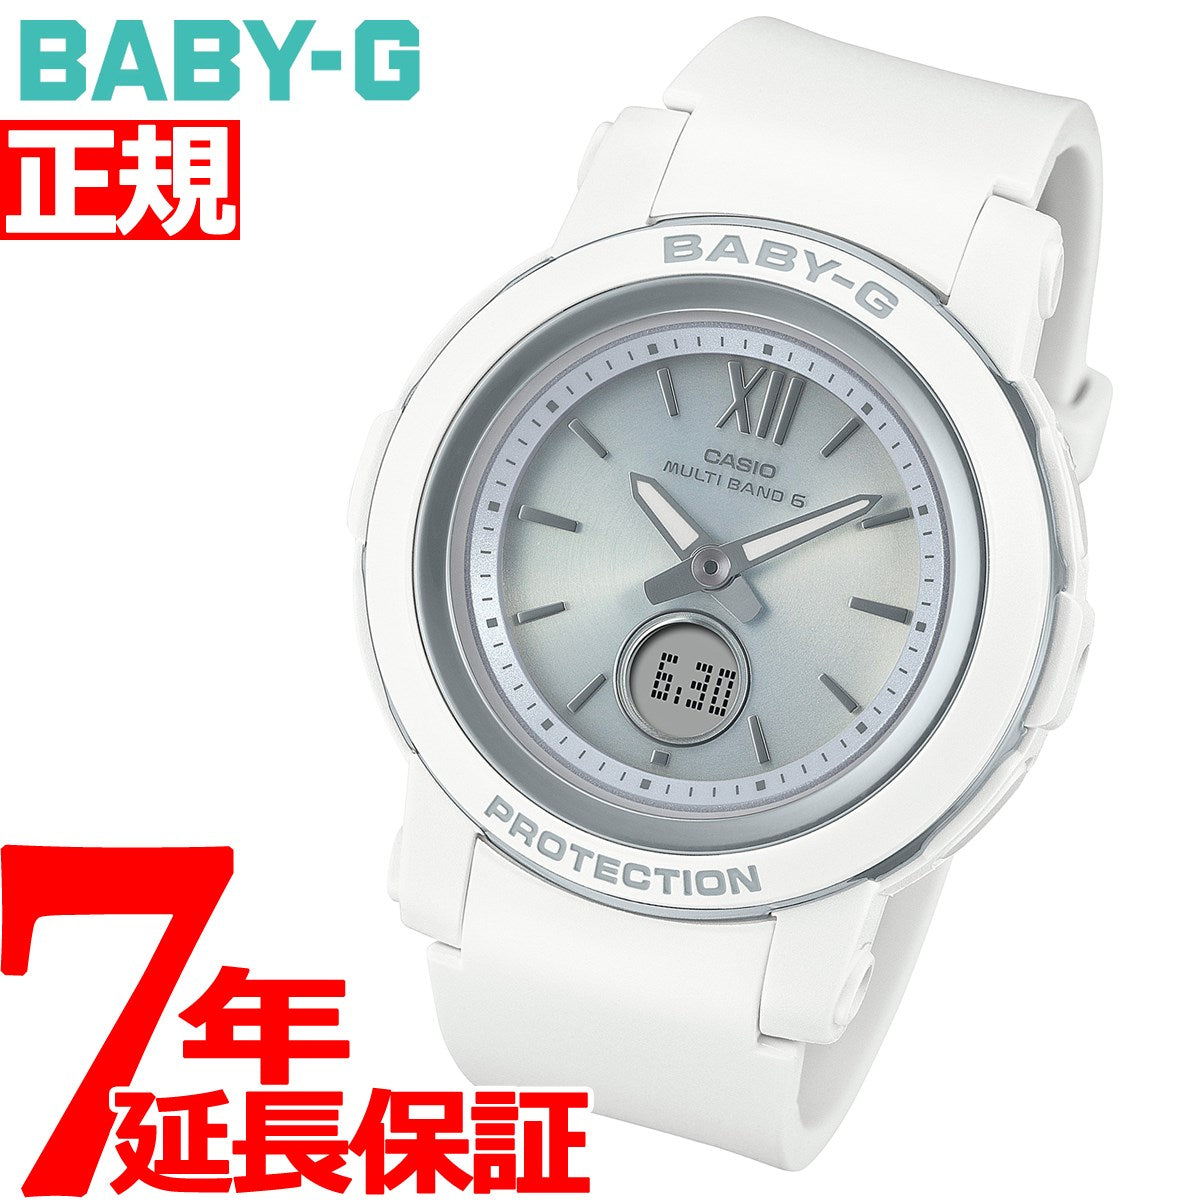 カシオ CASIO 腕時計 BABY-G BGA-2900-7AJF シルバー